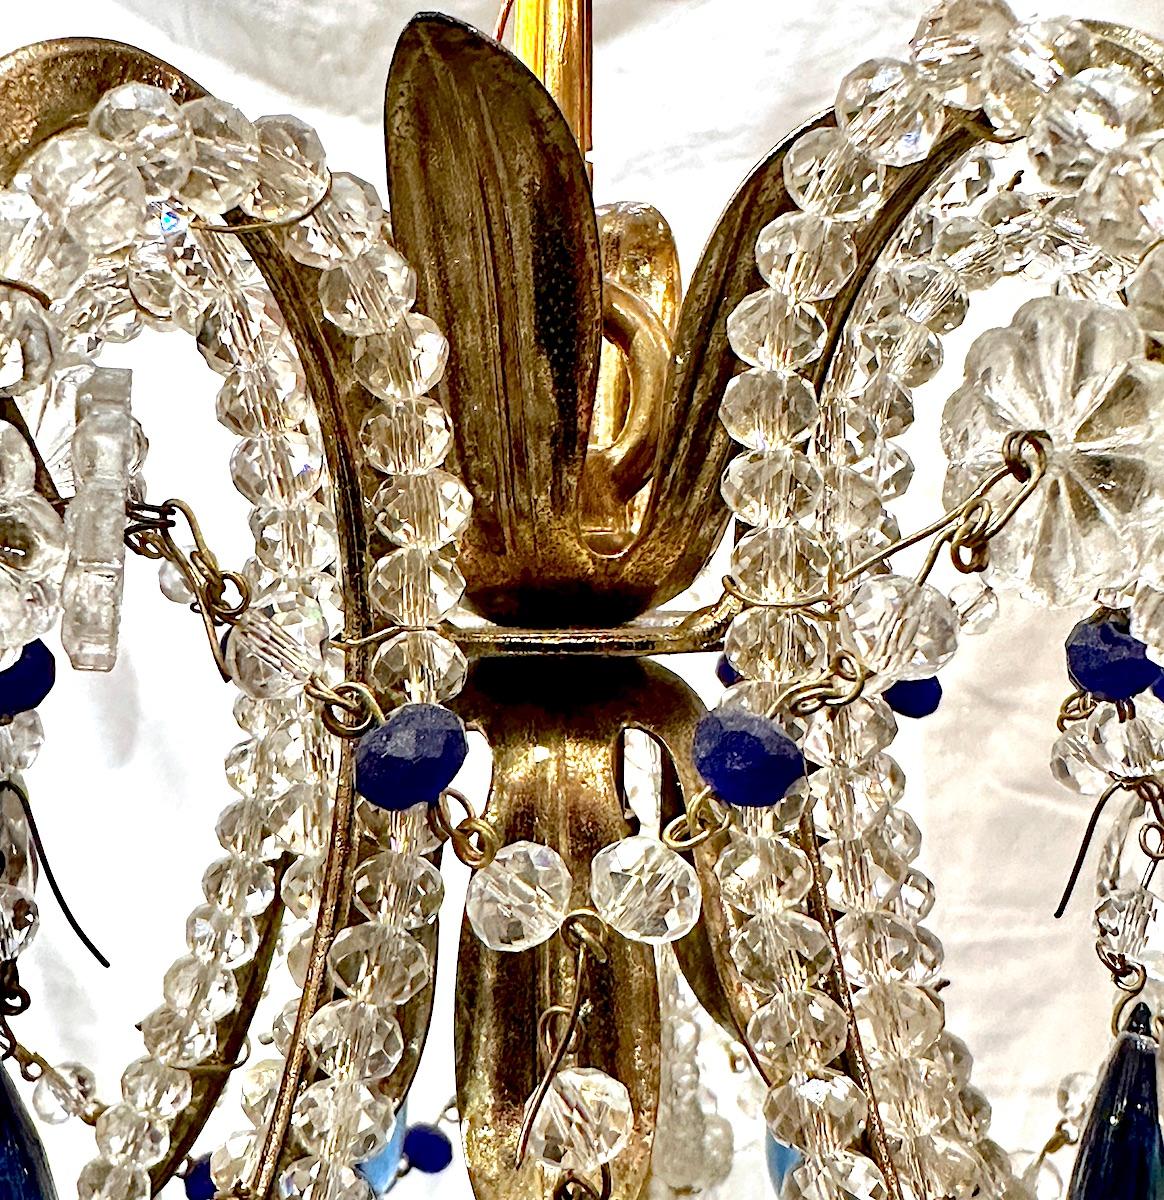 Luminaire à trois lumières en cristal perlé d'origine française, datant des années 1950.

Mesures :
Hauteur de chute : 21